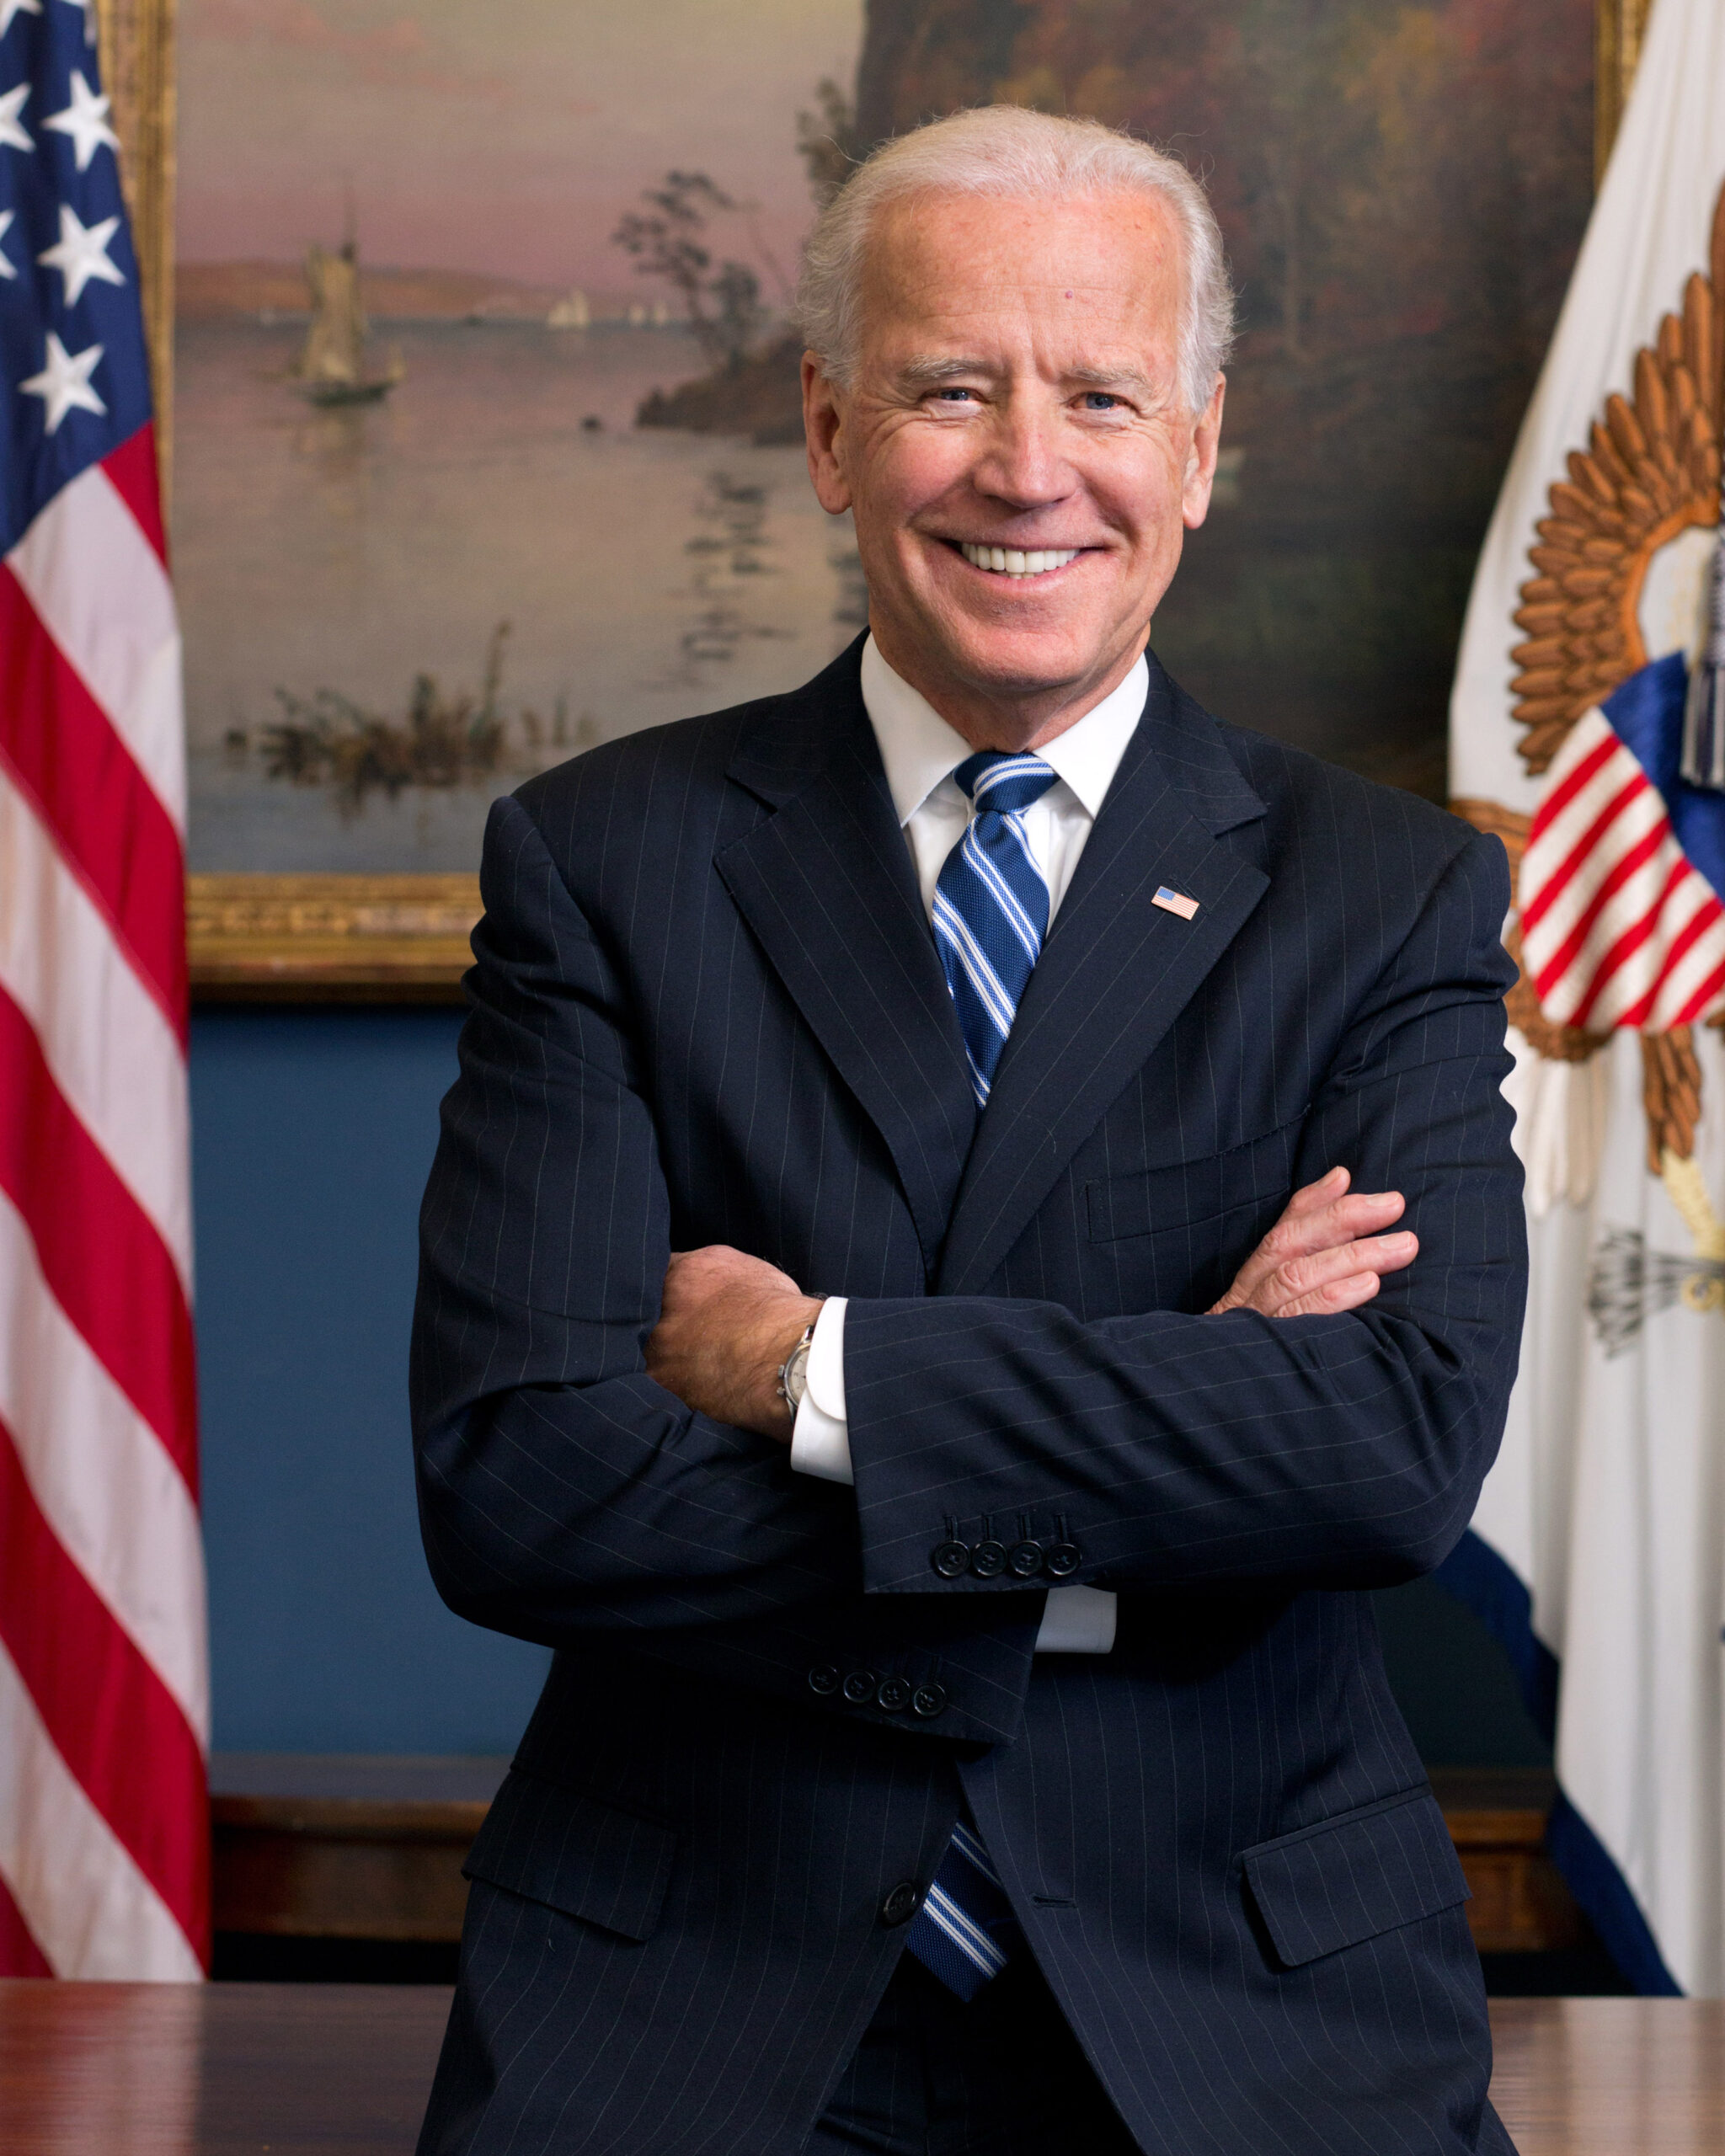 SUA: Joe Biden NU regretă decizia de a retrage forțele americane din Afganistan